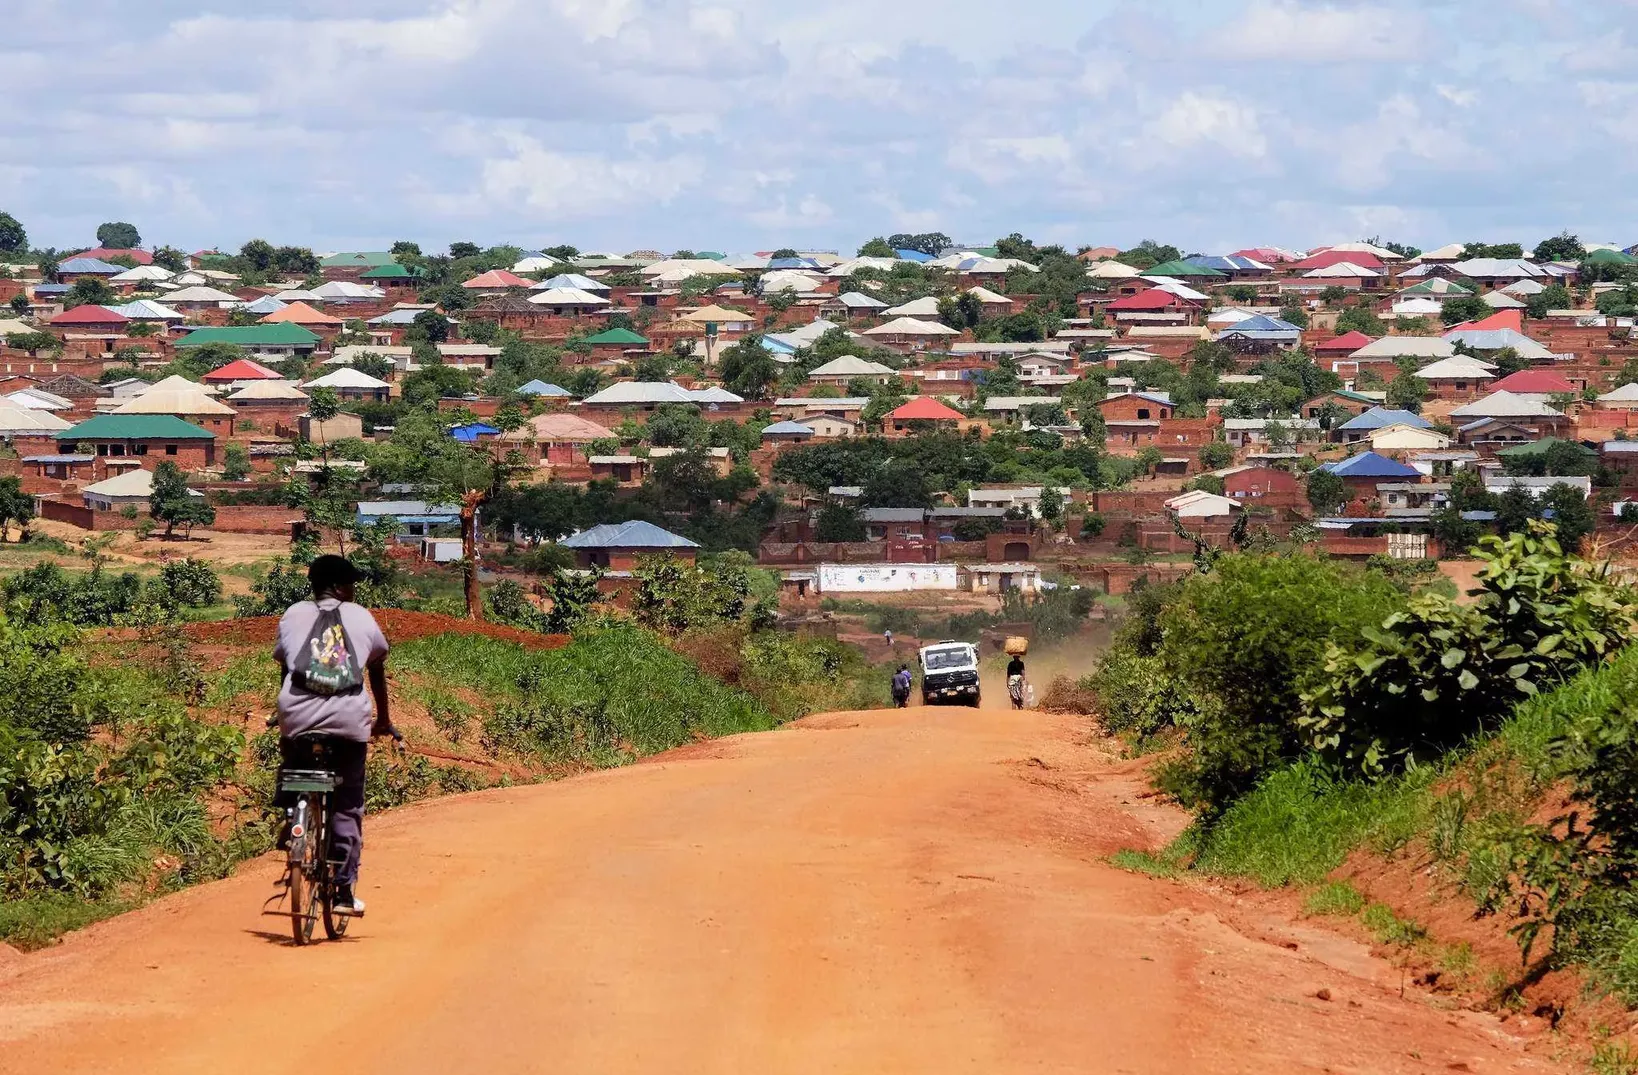 Lilongwe | Central Region, Malawi - Rated 4.4